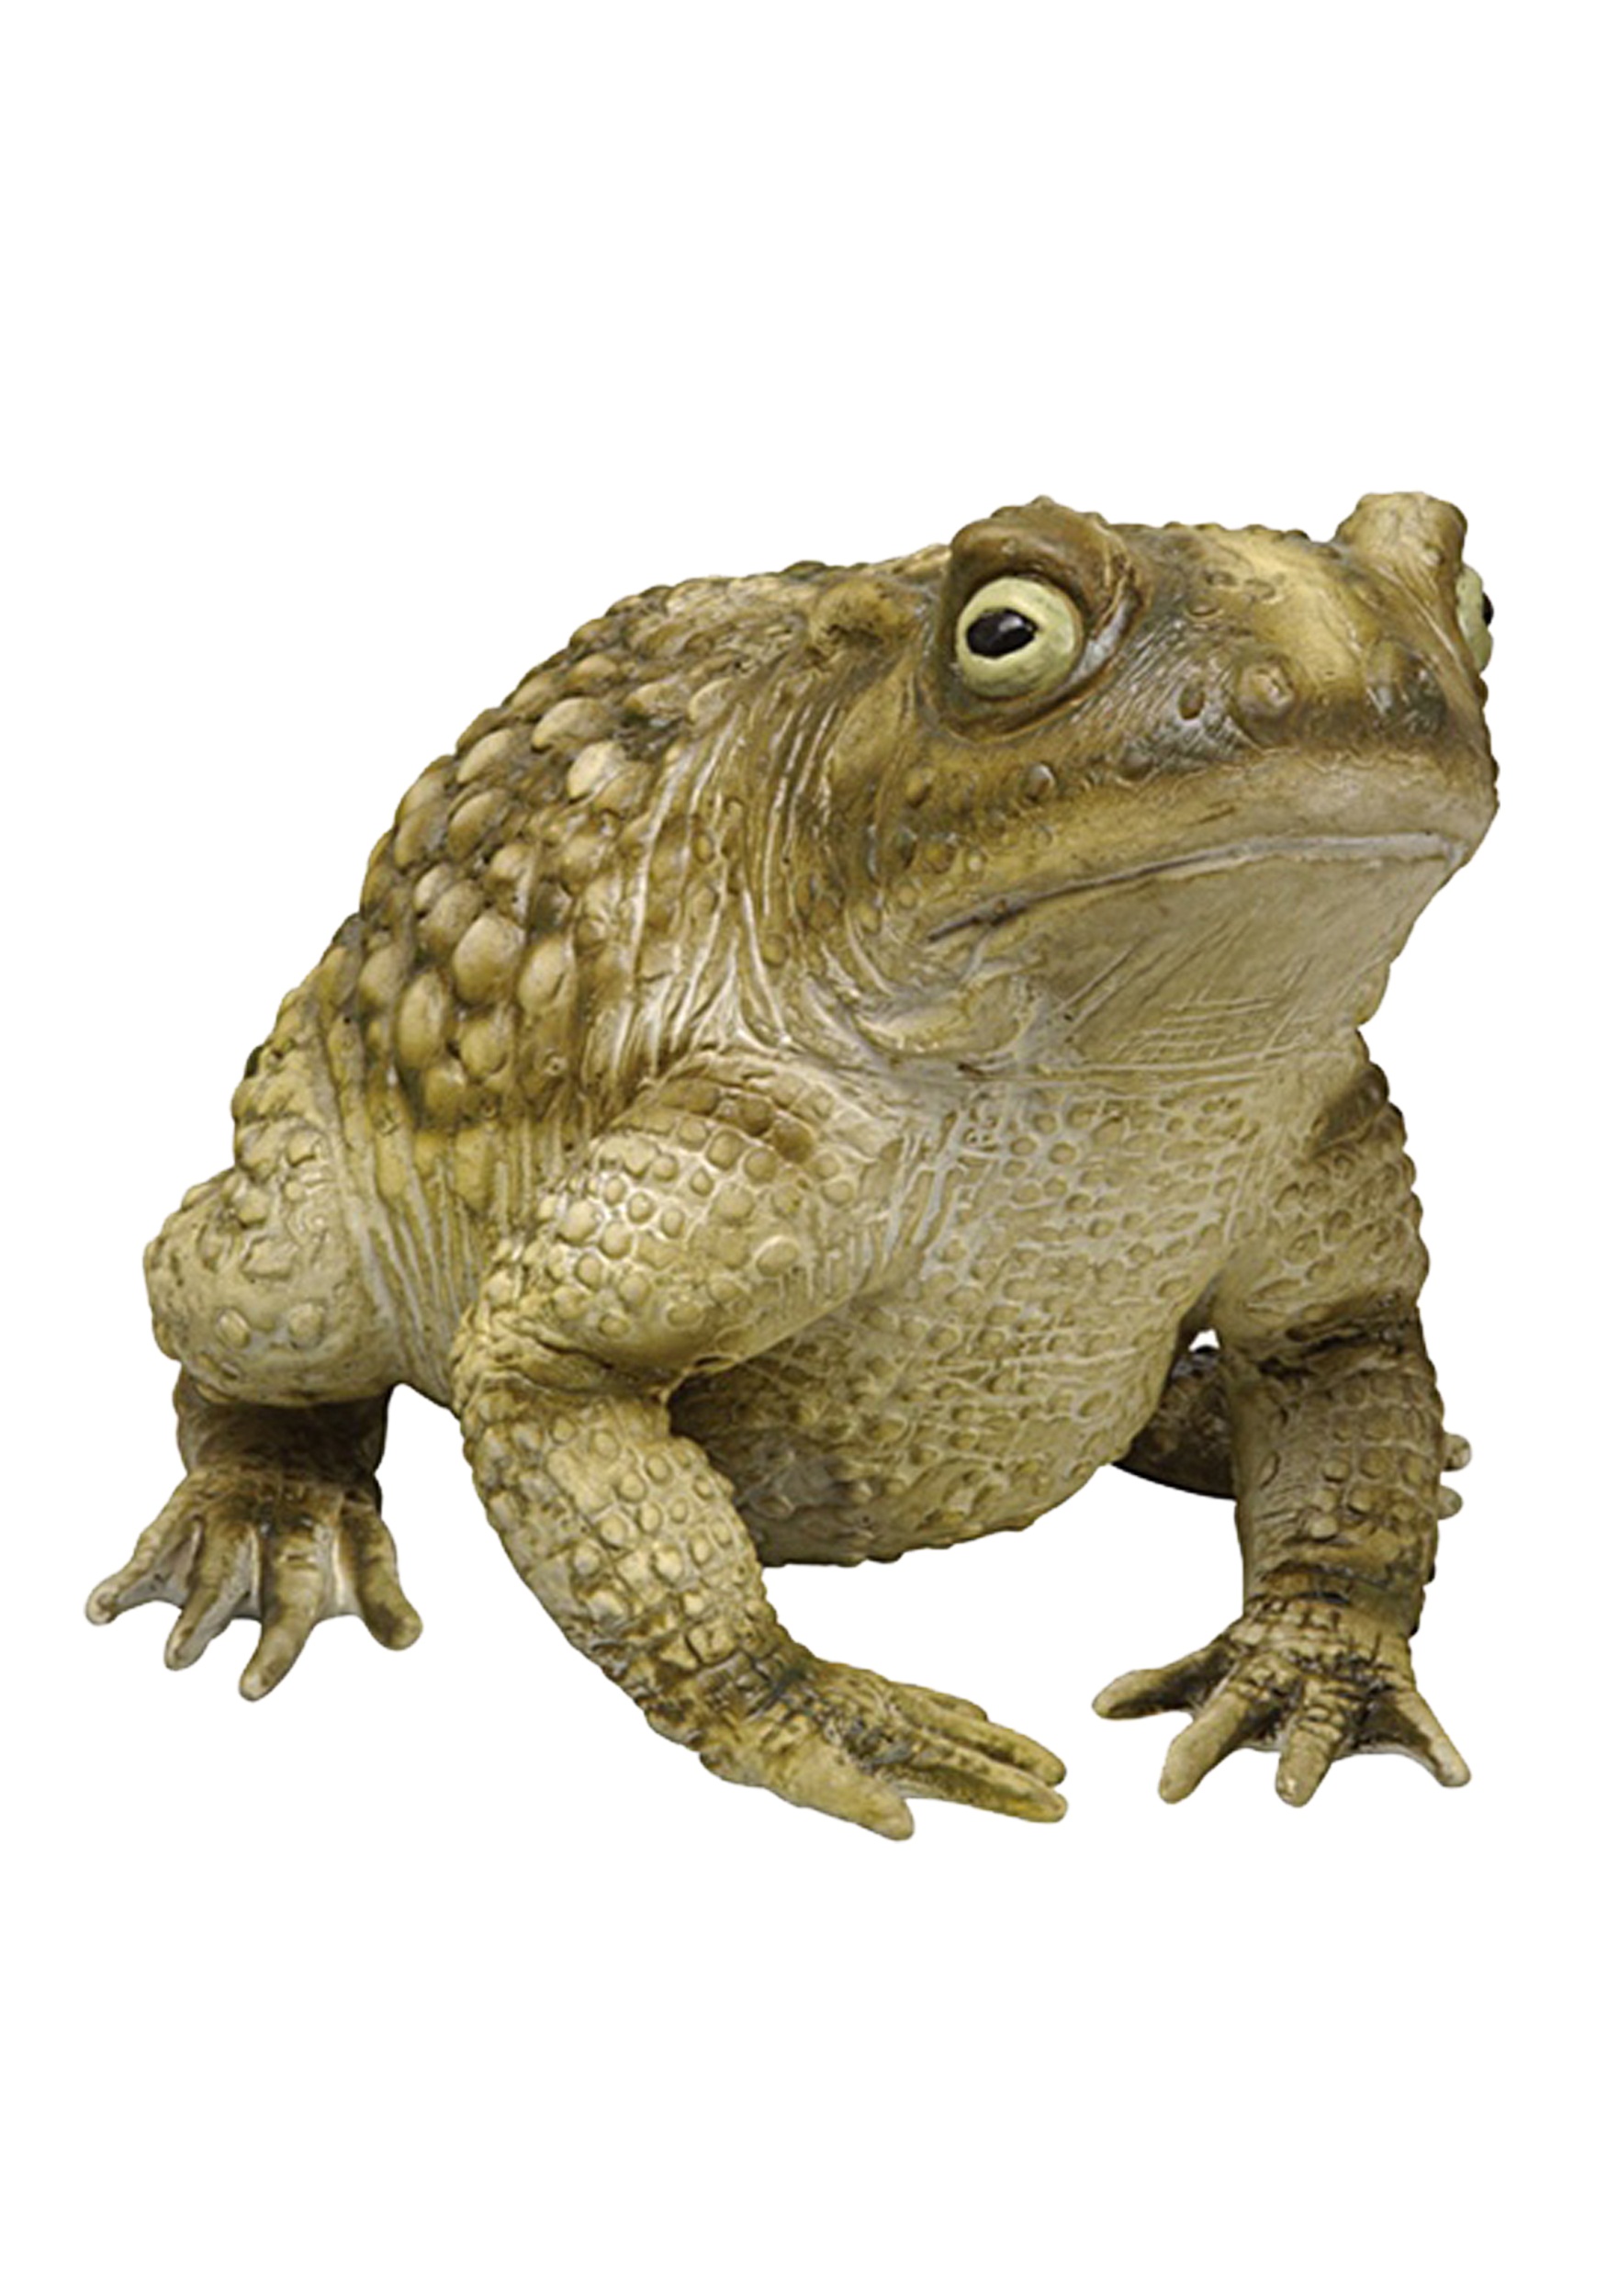 Foam Toad Statue